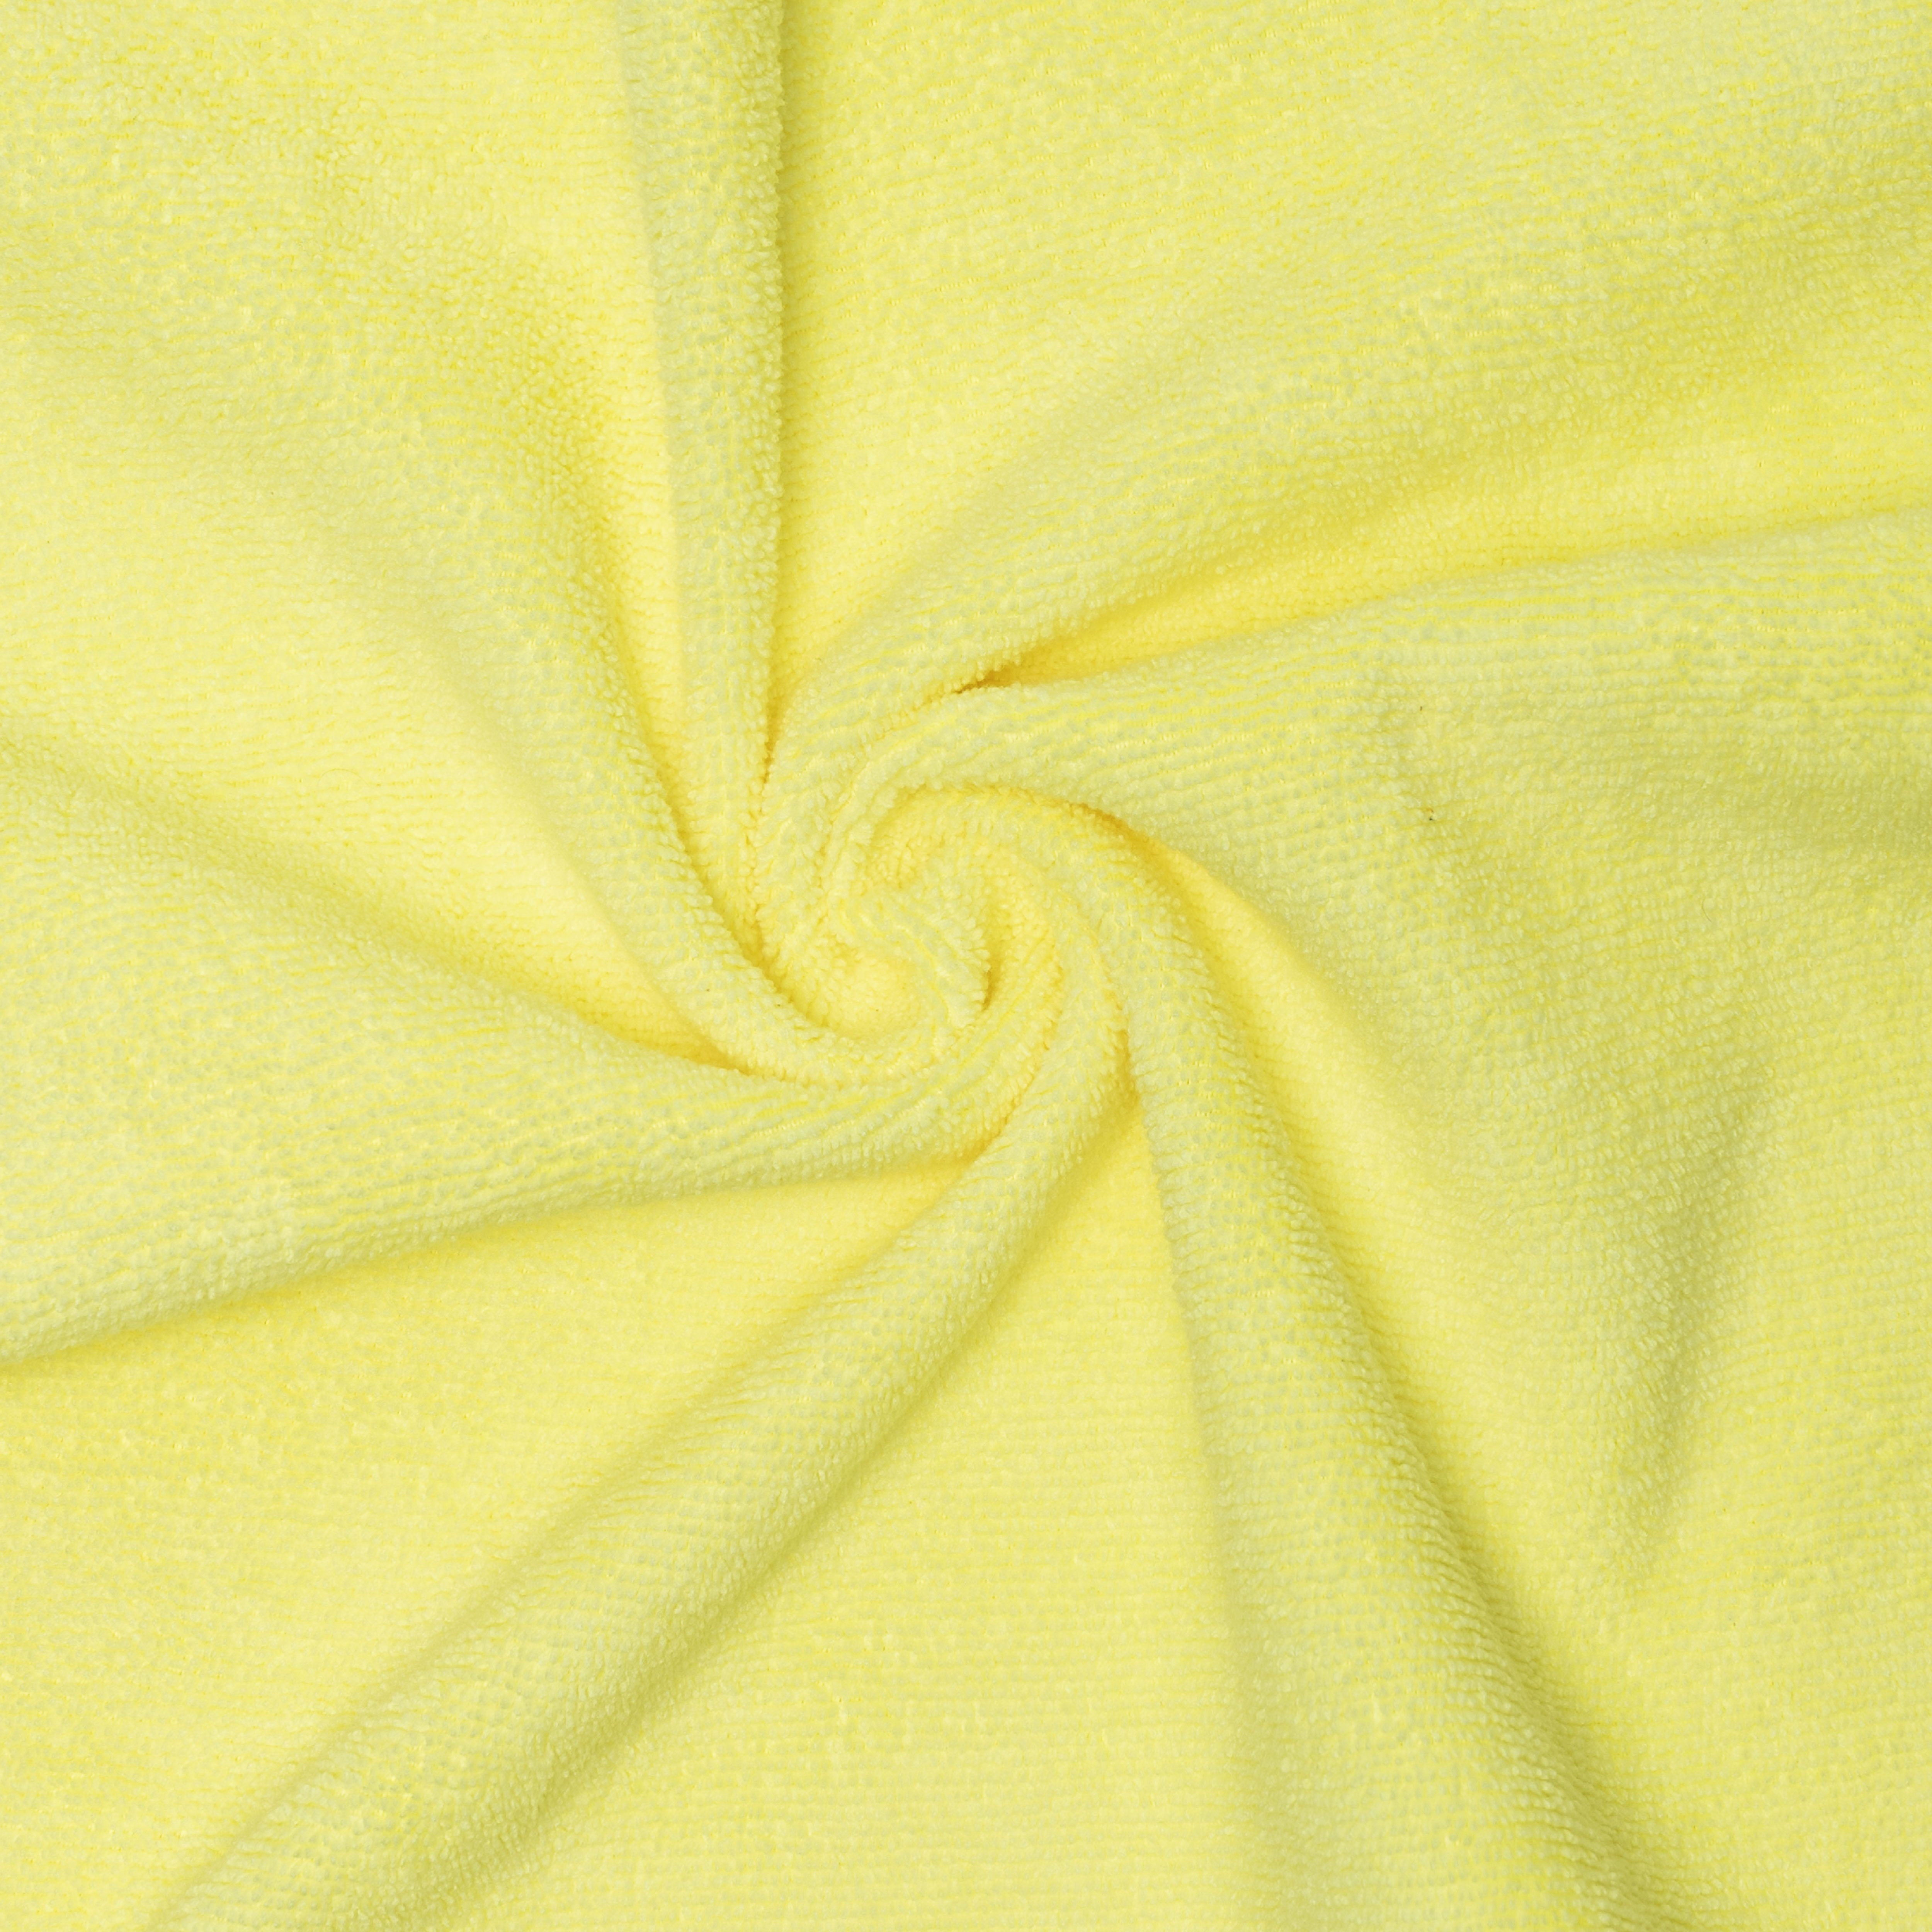 Home (Mikrofaser, Putzlappen) gelb 5-tlg., Mikrofasertücher cm, Putztücher Reinigungstücher 40x40 One